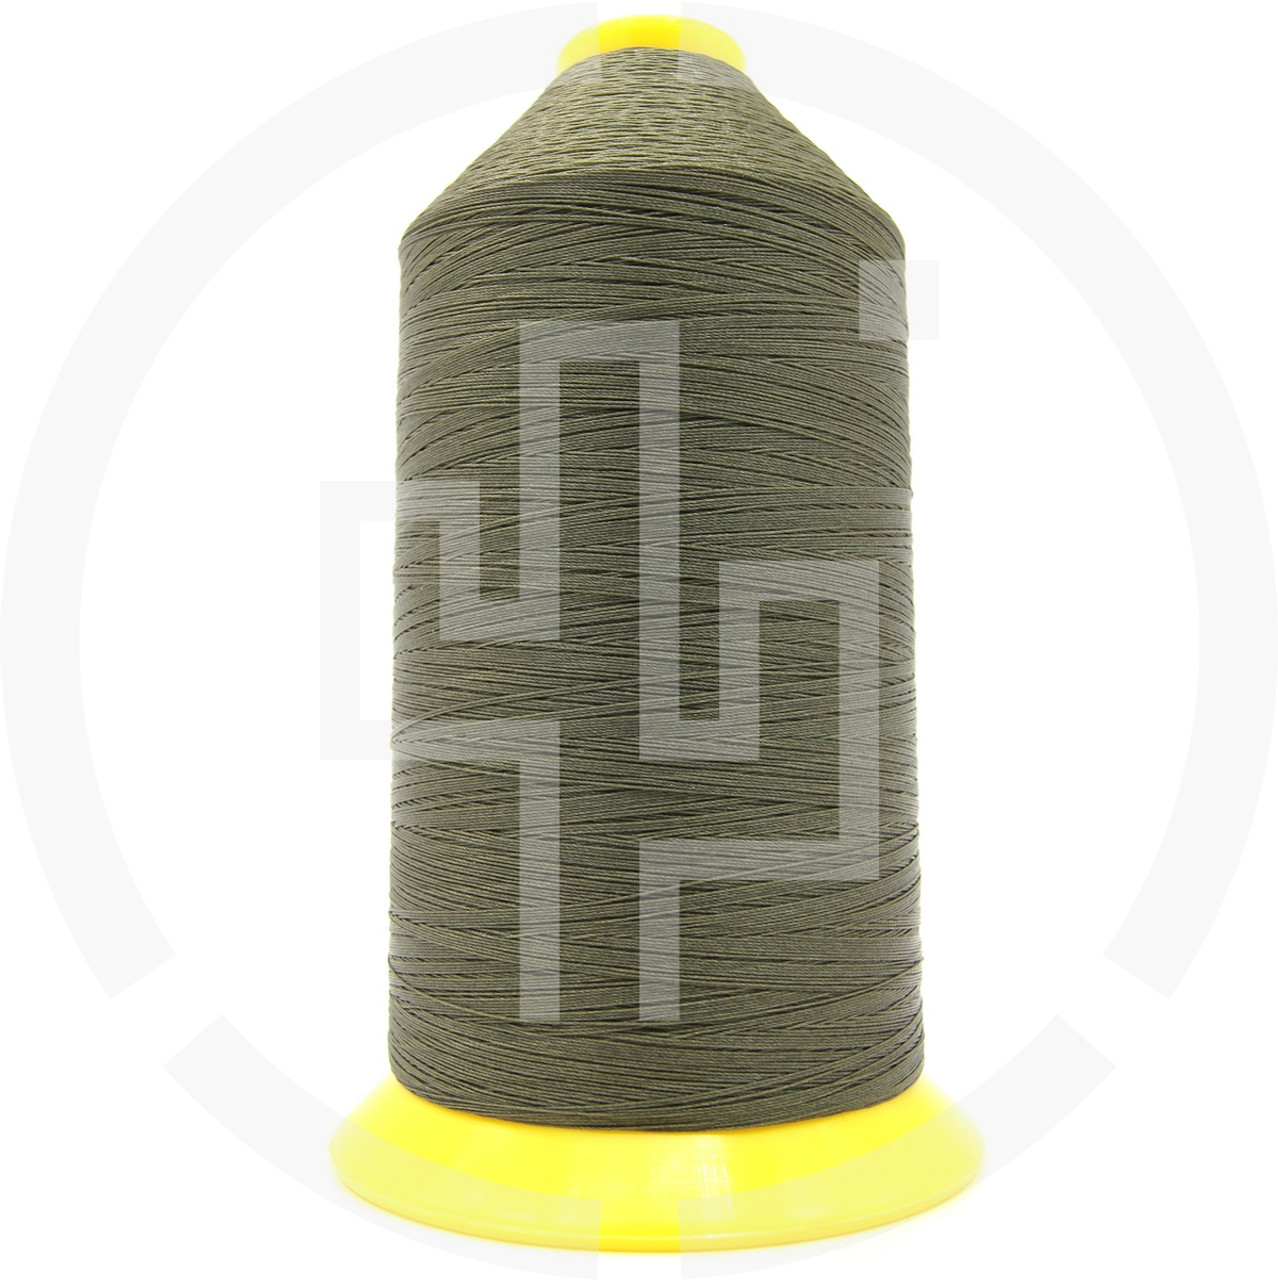 Forest Green) Marine Bonded Nylon Thread, V 69 Weight. (100% Nylon)